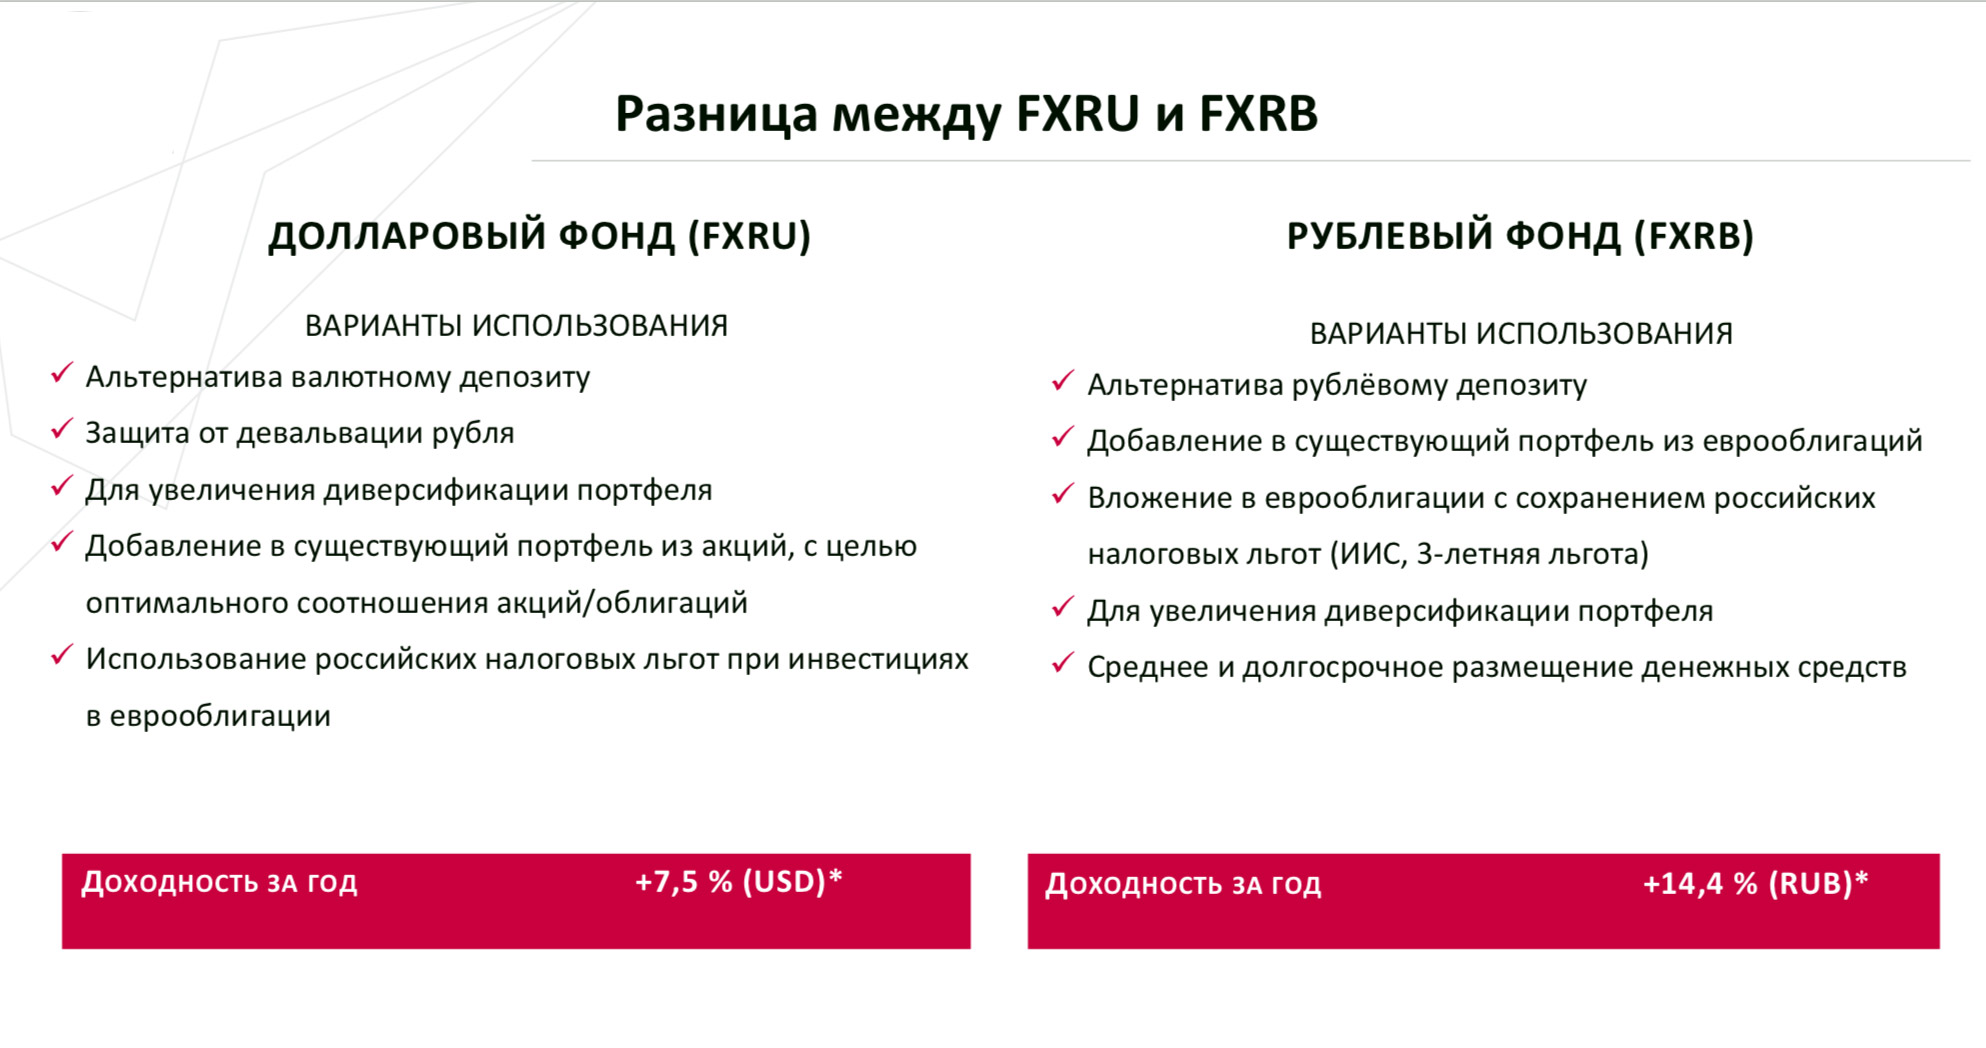 Фонды облигаций FXRU и FXRB